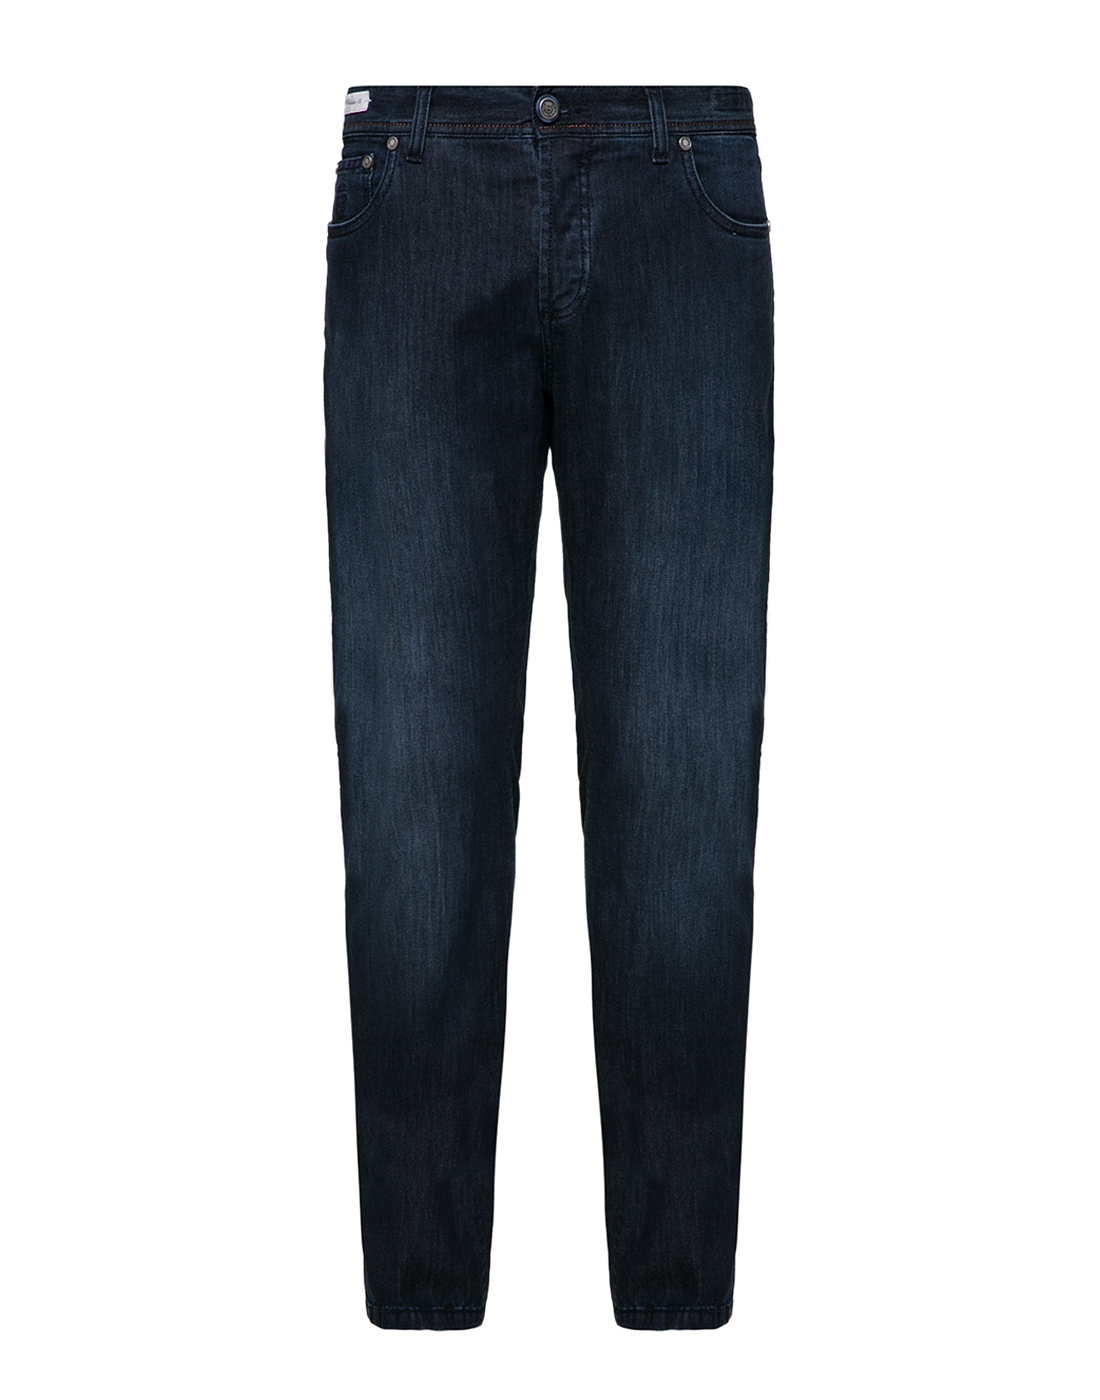 Мужские темно-синие джинсы Tokyo Richard J. Brown ST41.W207-1